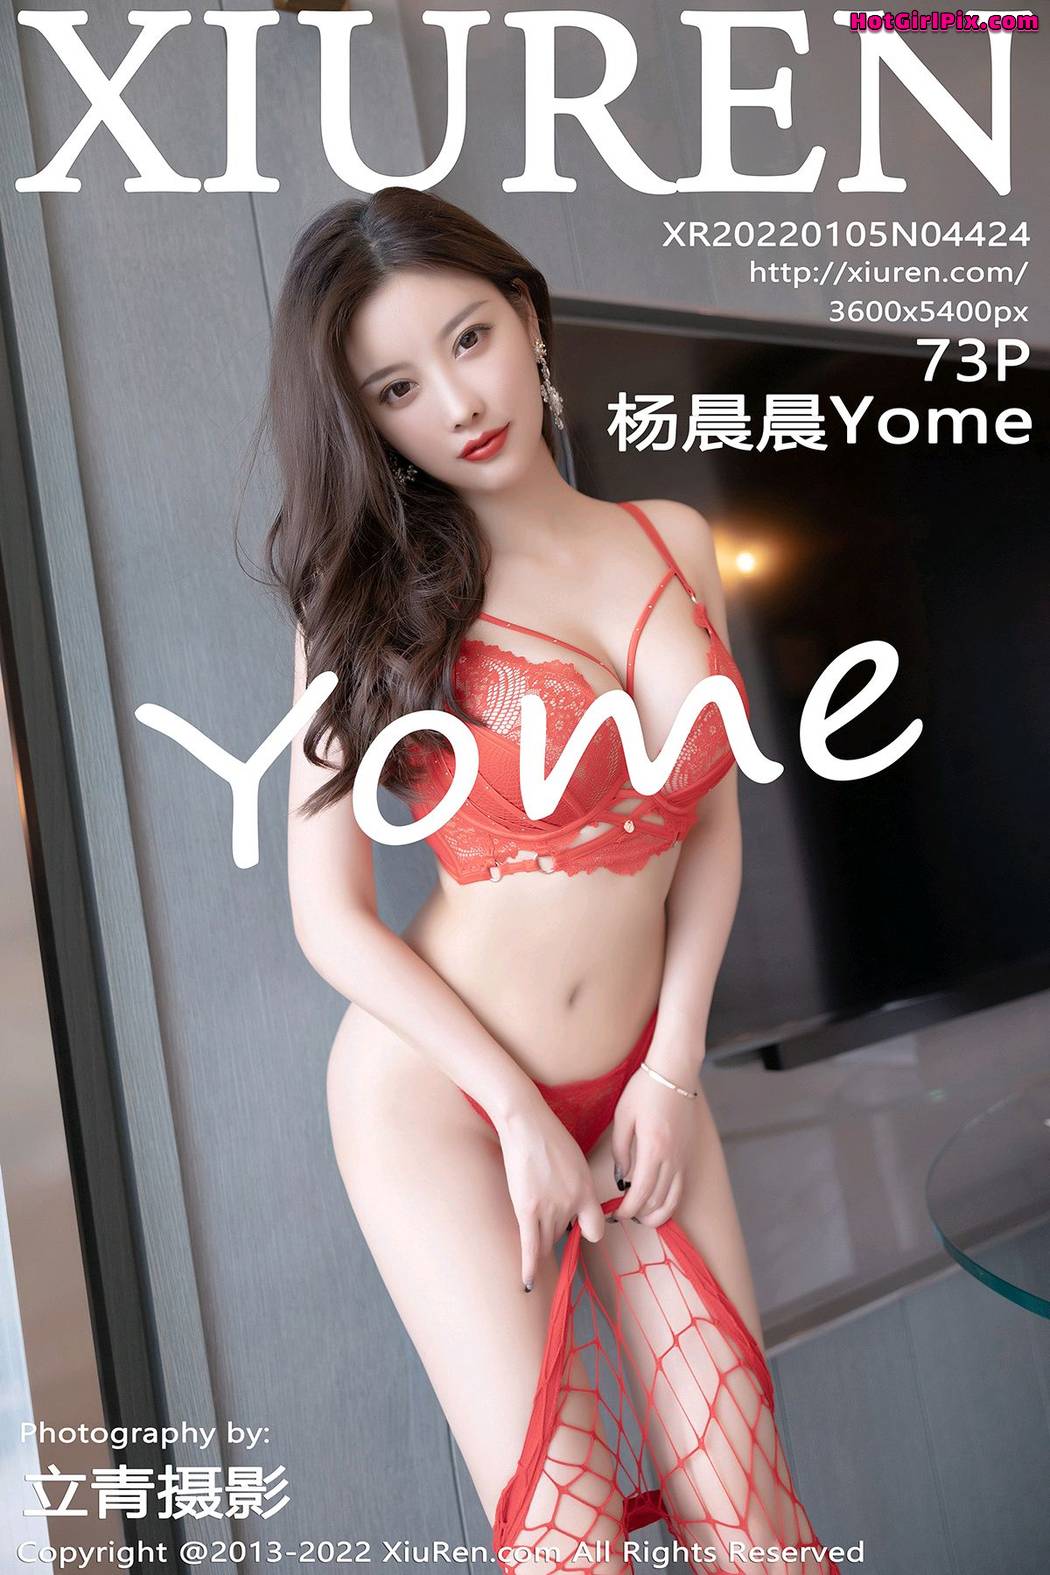 [XIUREN] No.4424 Yang Chen Chen 杨晨晨Yome (Yang Chen Chen 杨晨晨sugar) Cover Photo